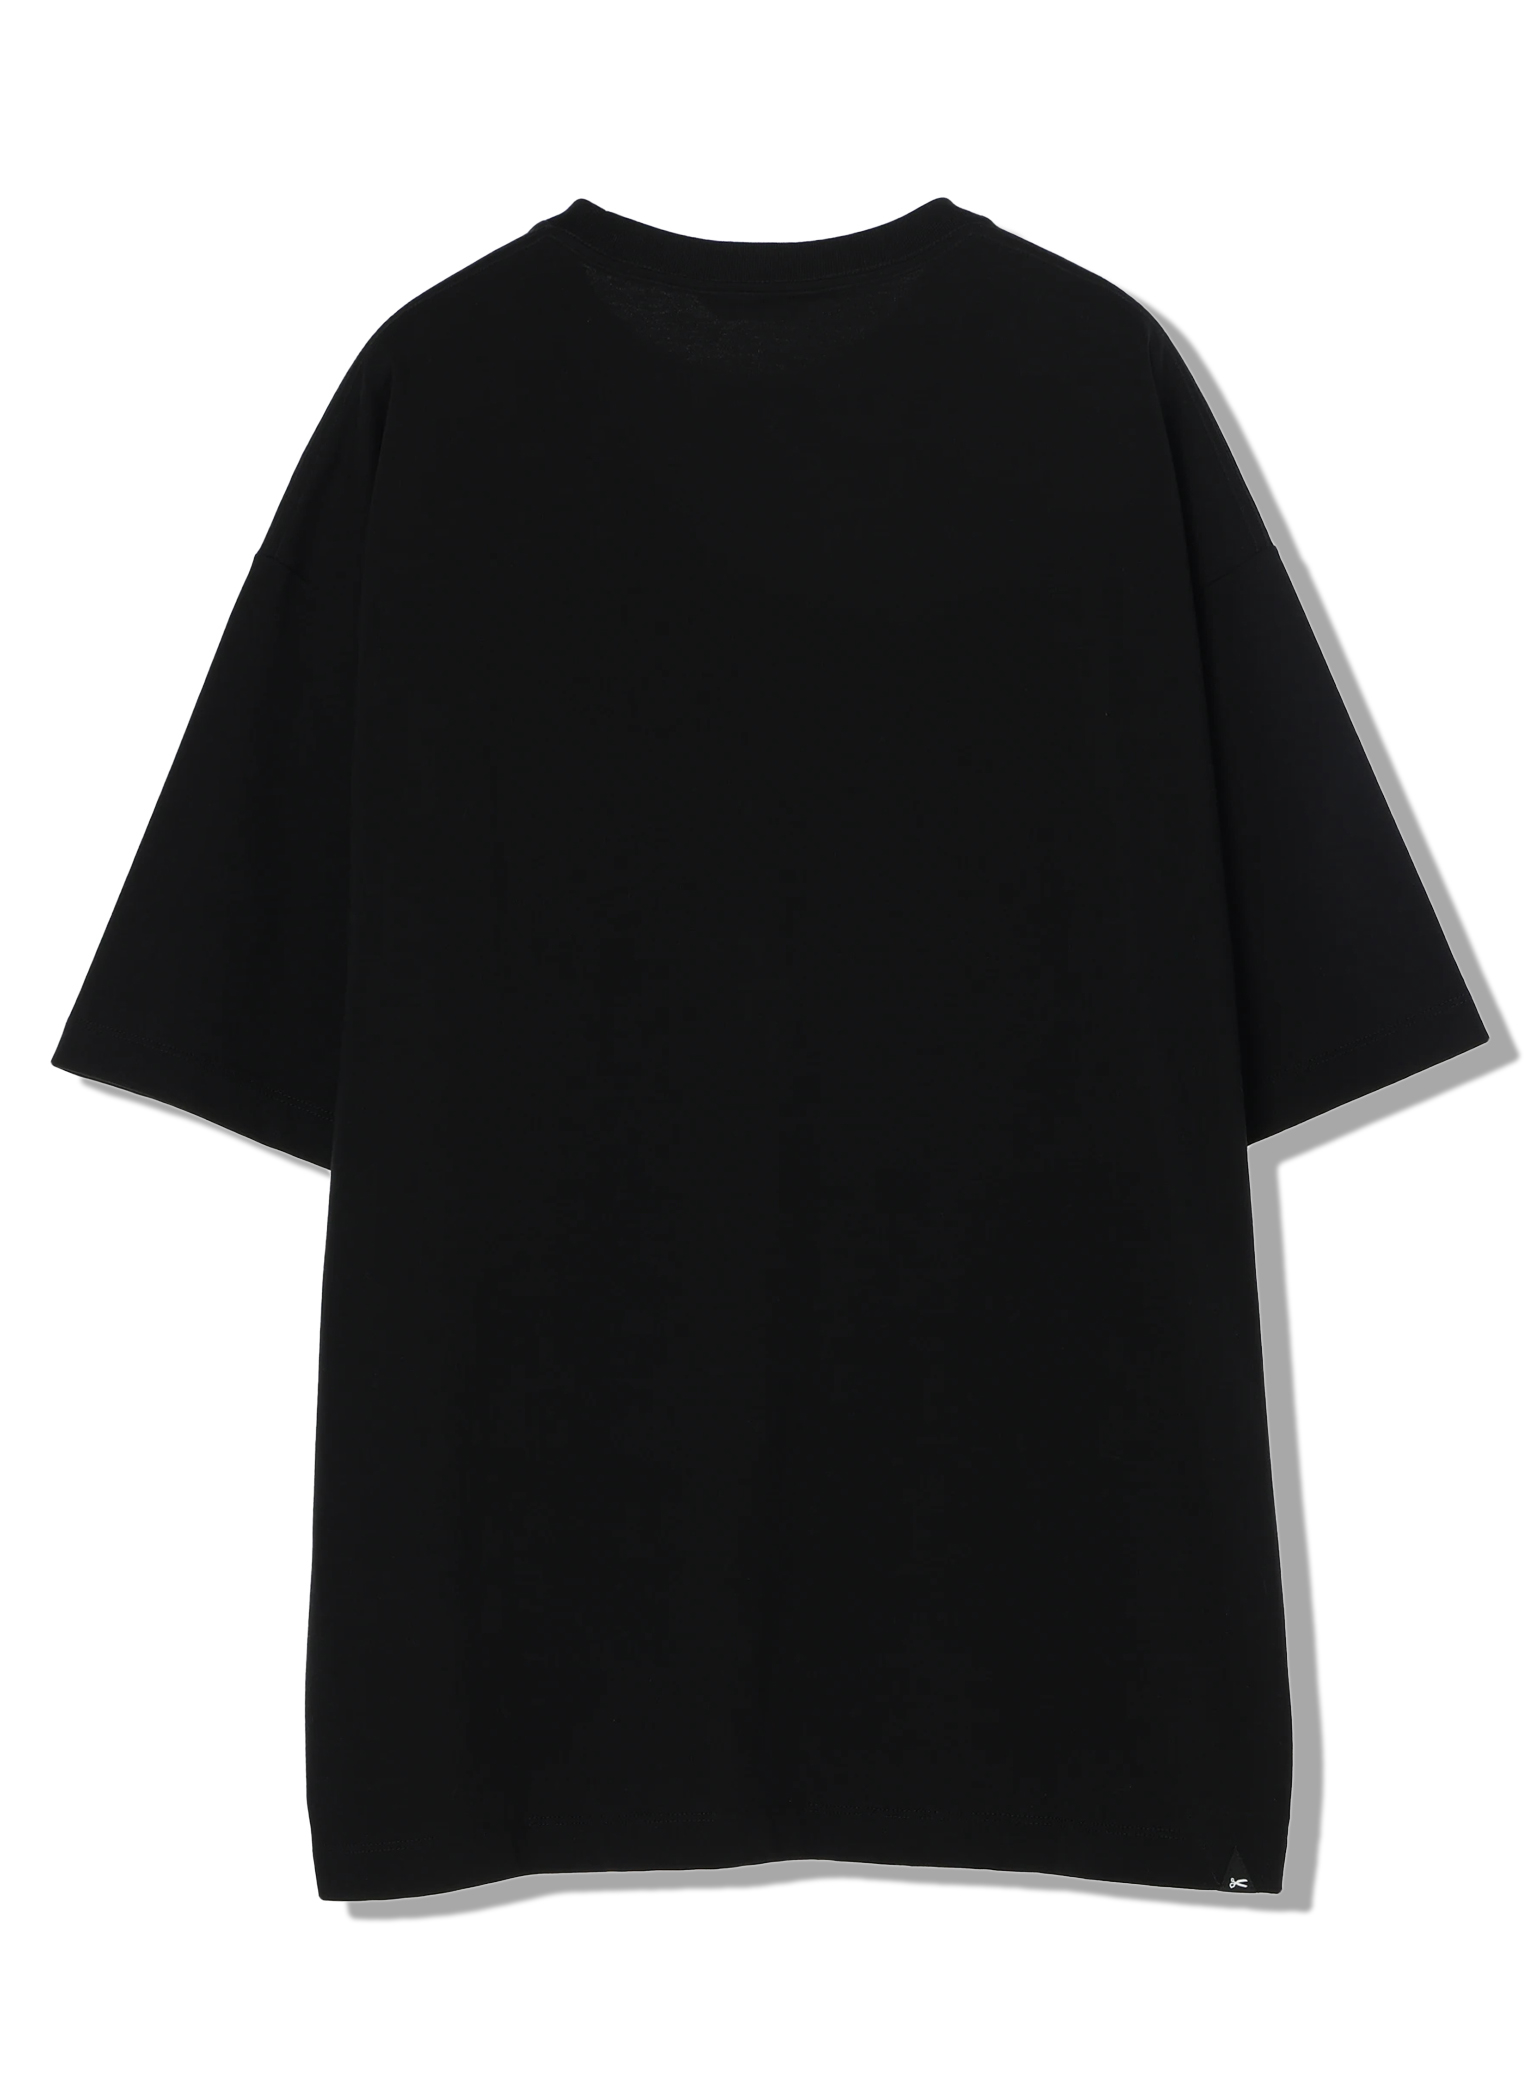 メンズFUJIWARA&CO. BACK DOUBLE LOGO TEE - Tシャツ/カットソー(半袖 ...